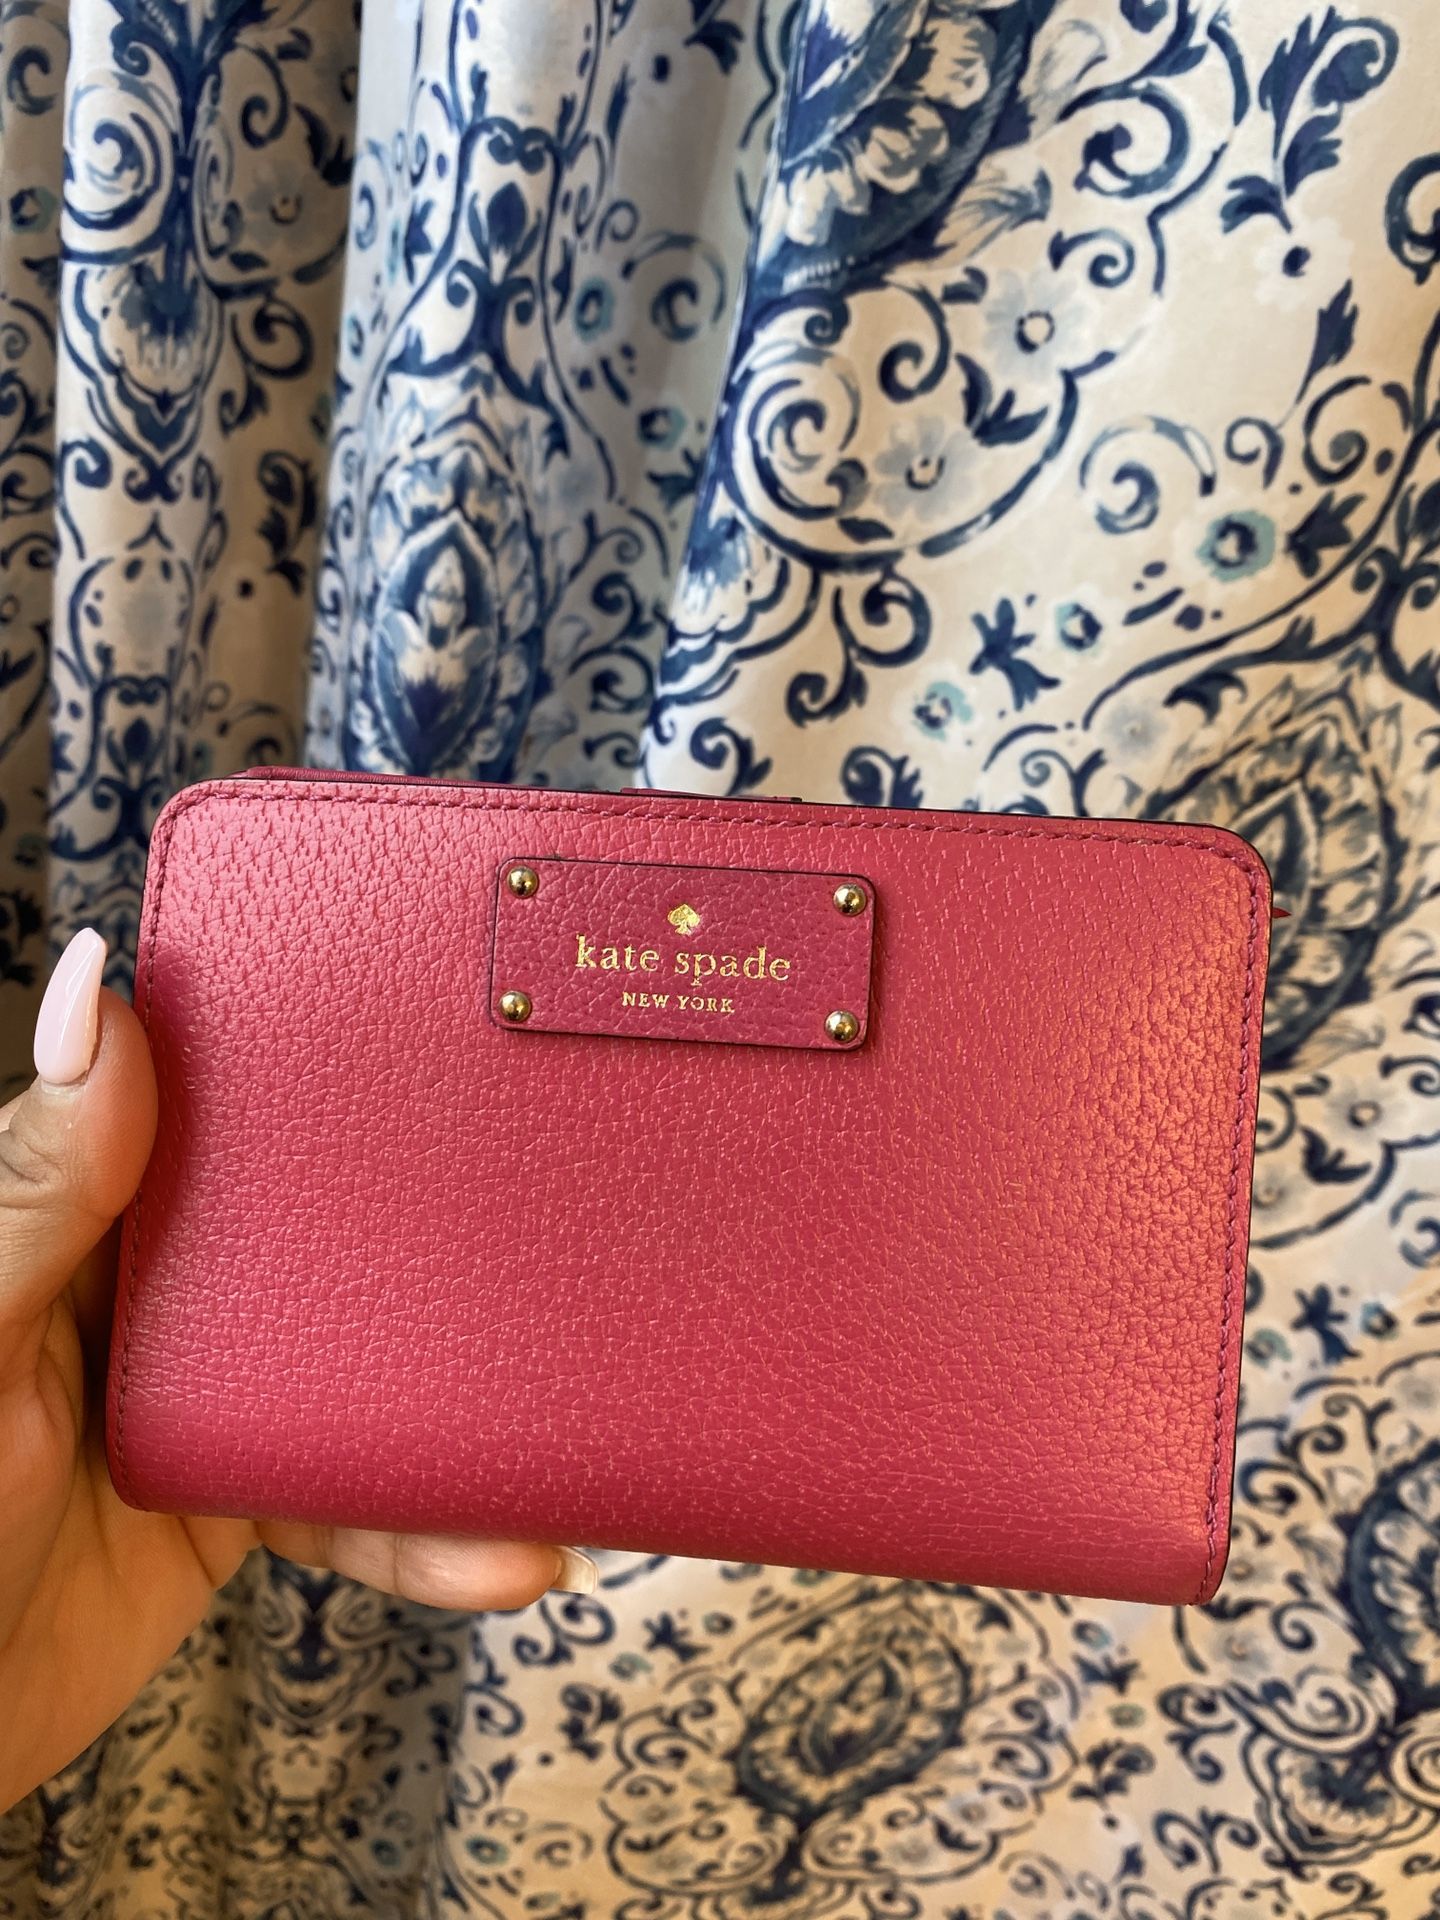 Kate Spade wallet (pink)